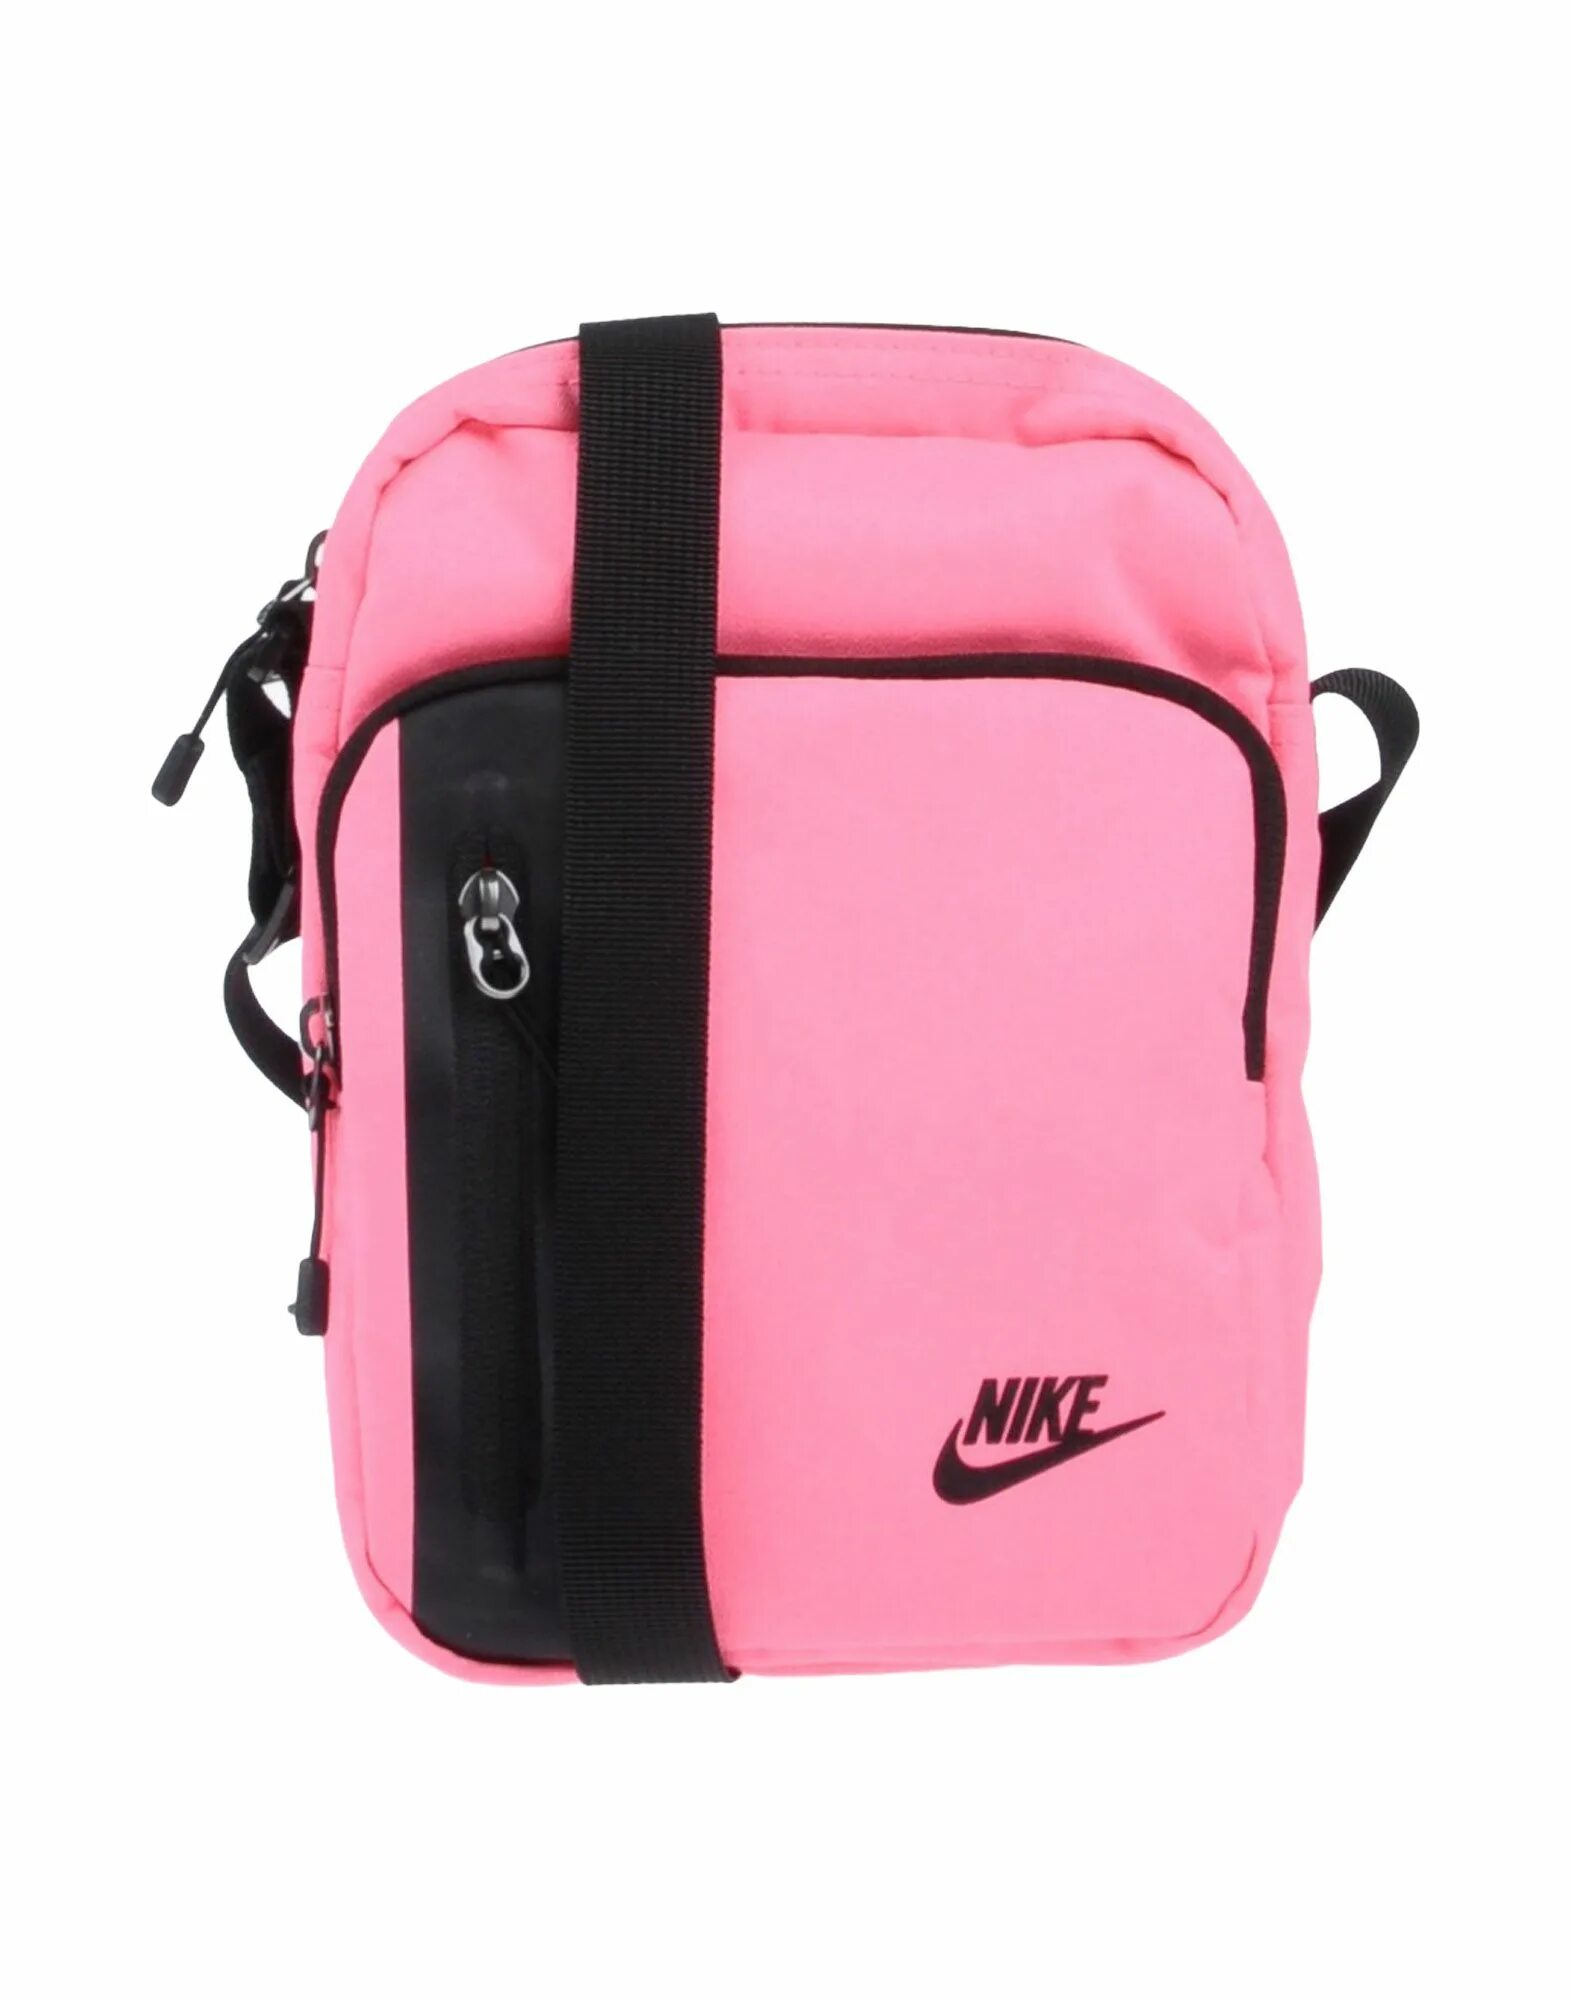 Розовая сумка через плечо. Сумка найк спортивная розовая. 56323 Сумка Nike через плечо. Сумка найк через плечо женские. Сумка найк спортивная женская через плечо.